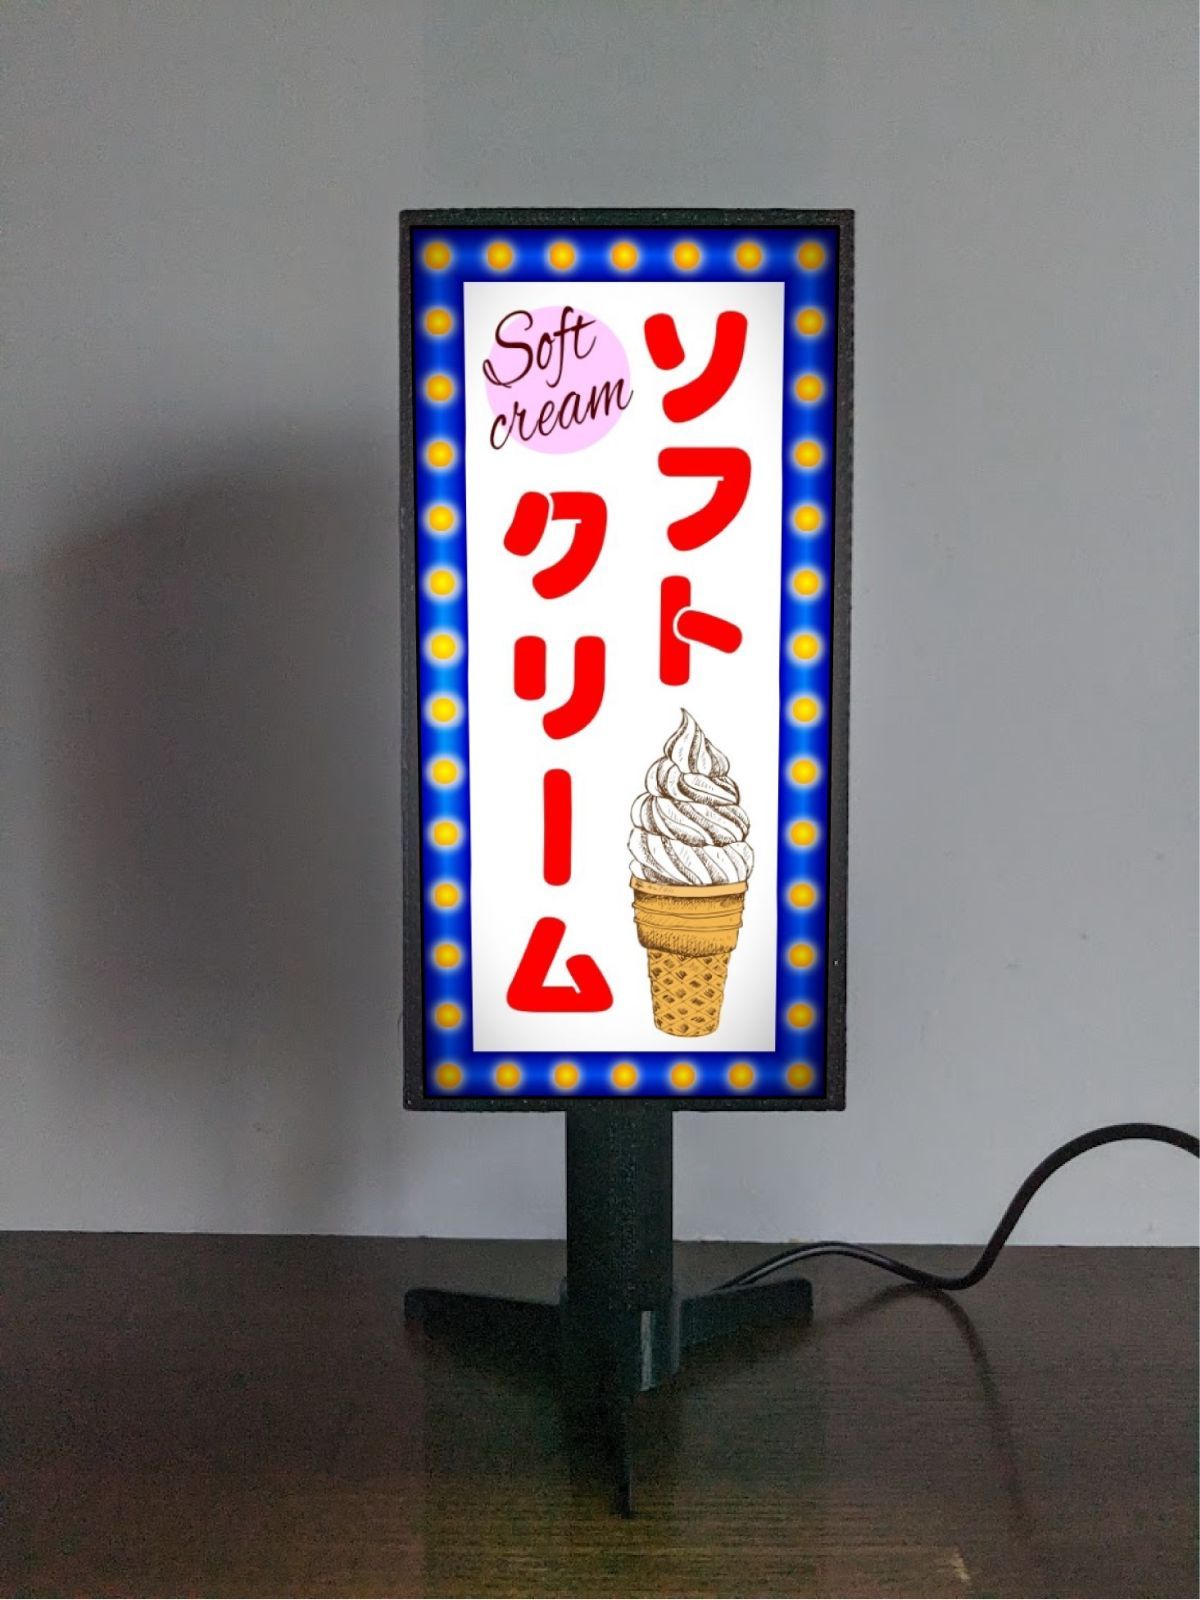 ソフトクリーム アイスクリーム アイスキャンディー スイーツ お菓子